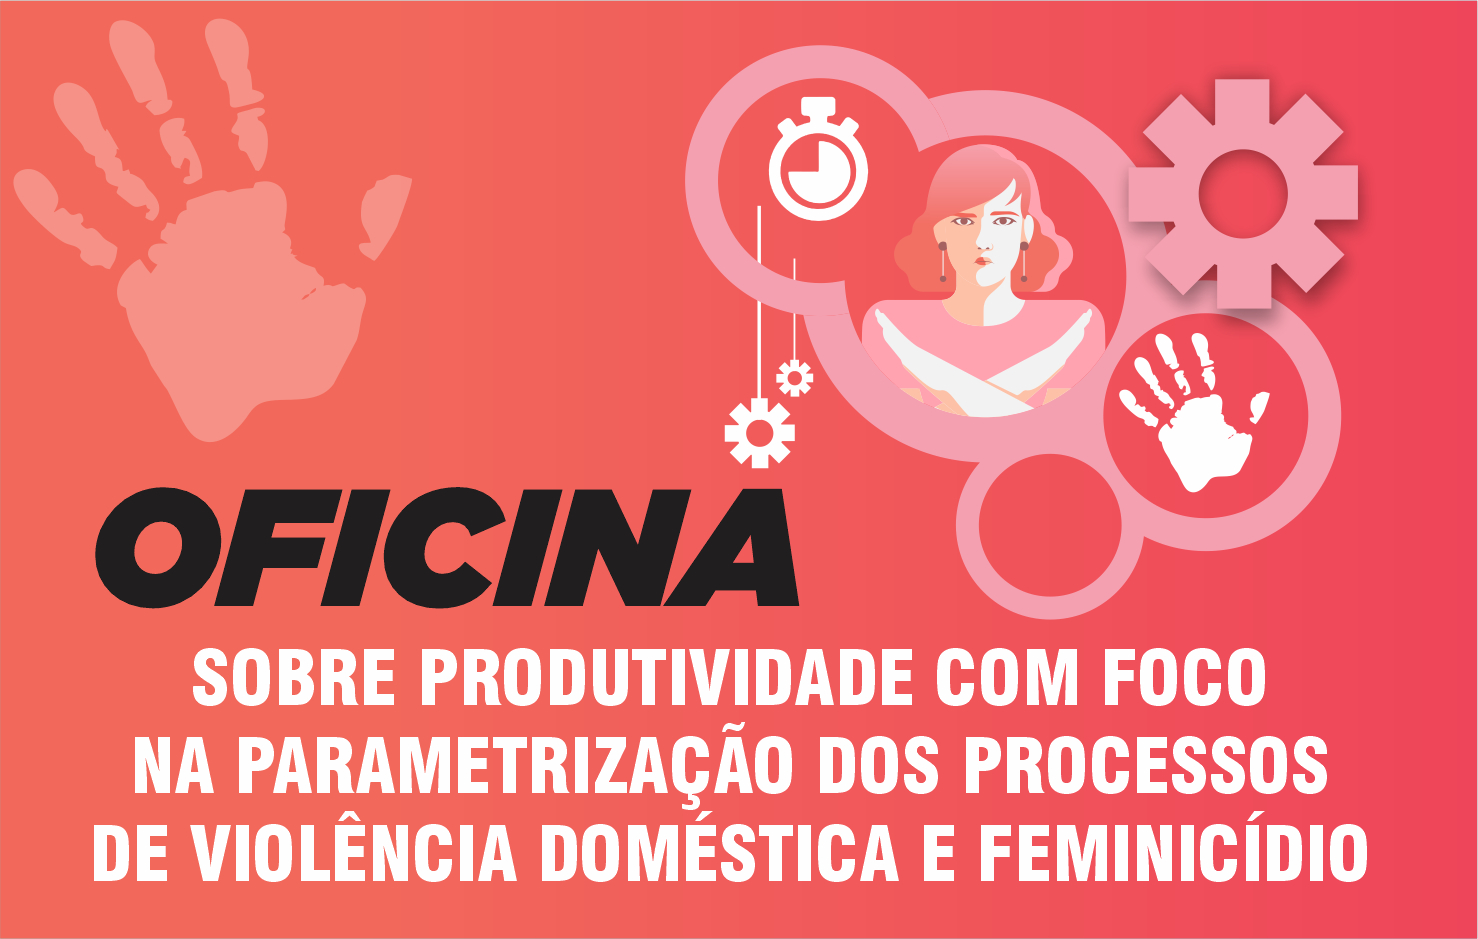 Oficina Sobre Produtividade com Foco na Parametrização dos Processos de Violência Doméstica e Feminicídio